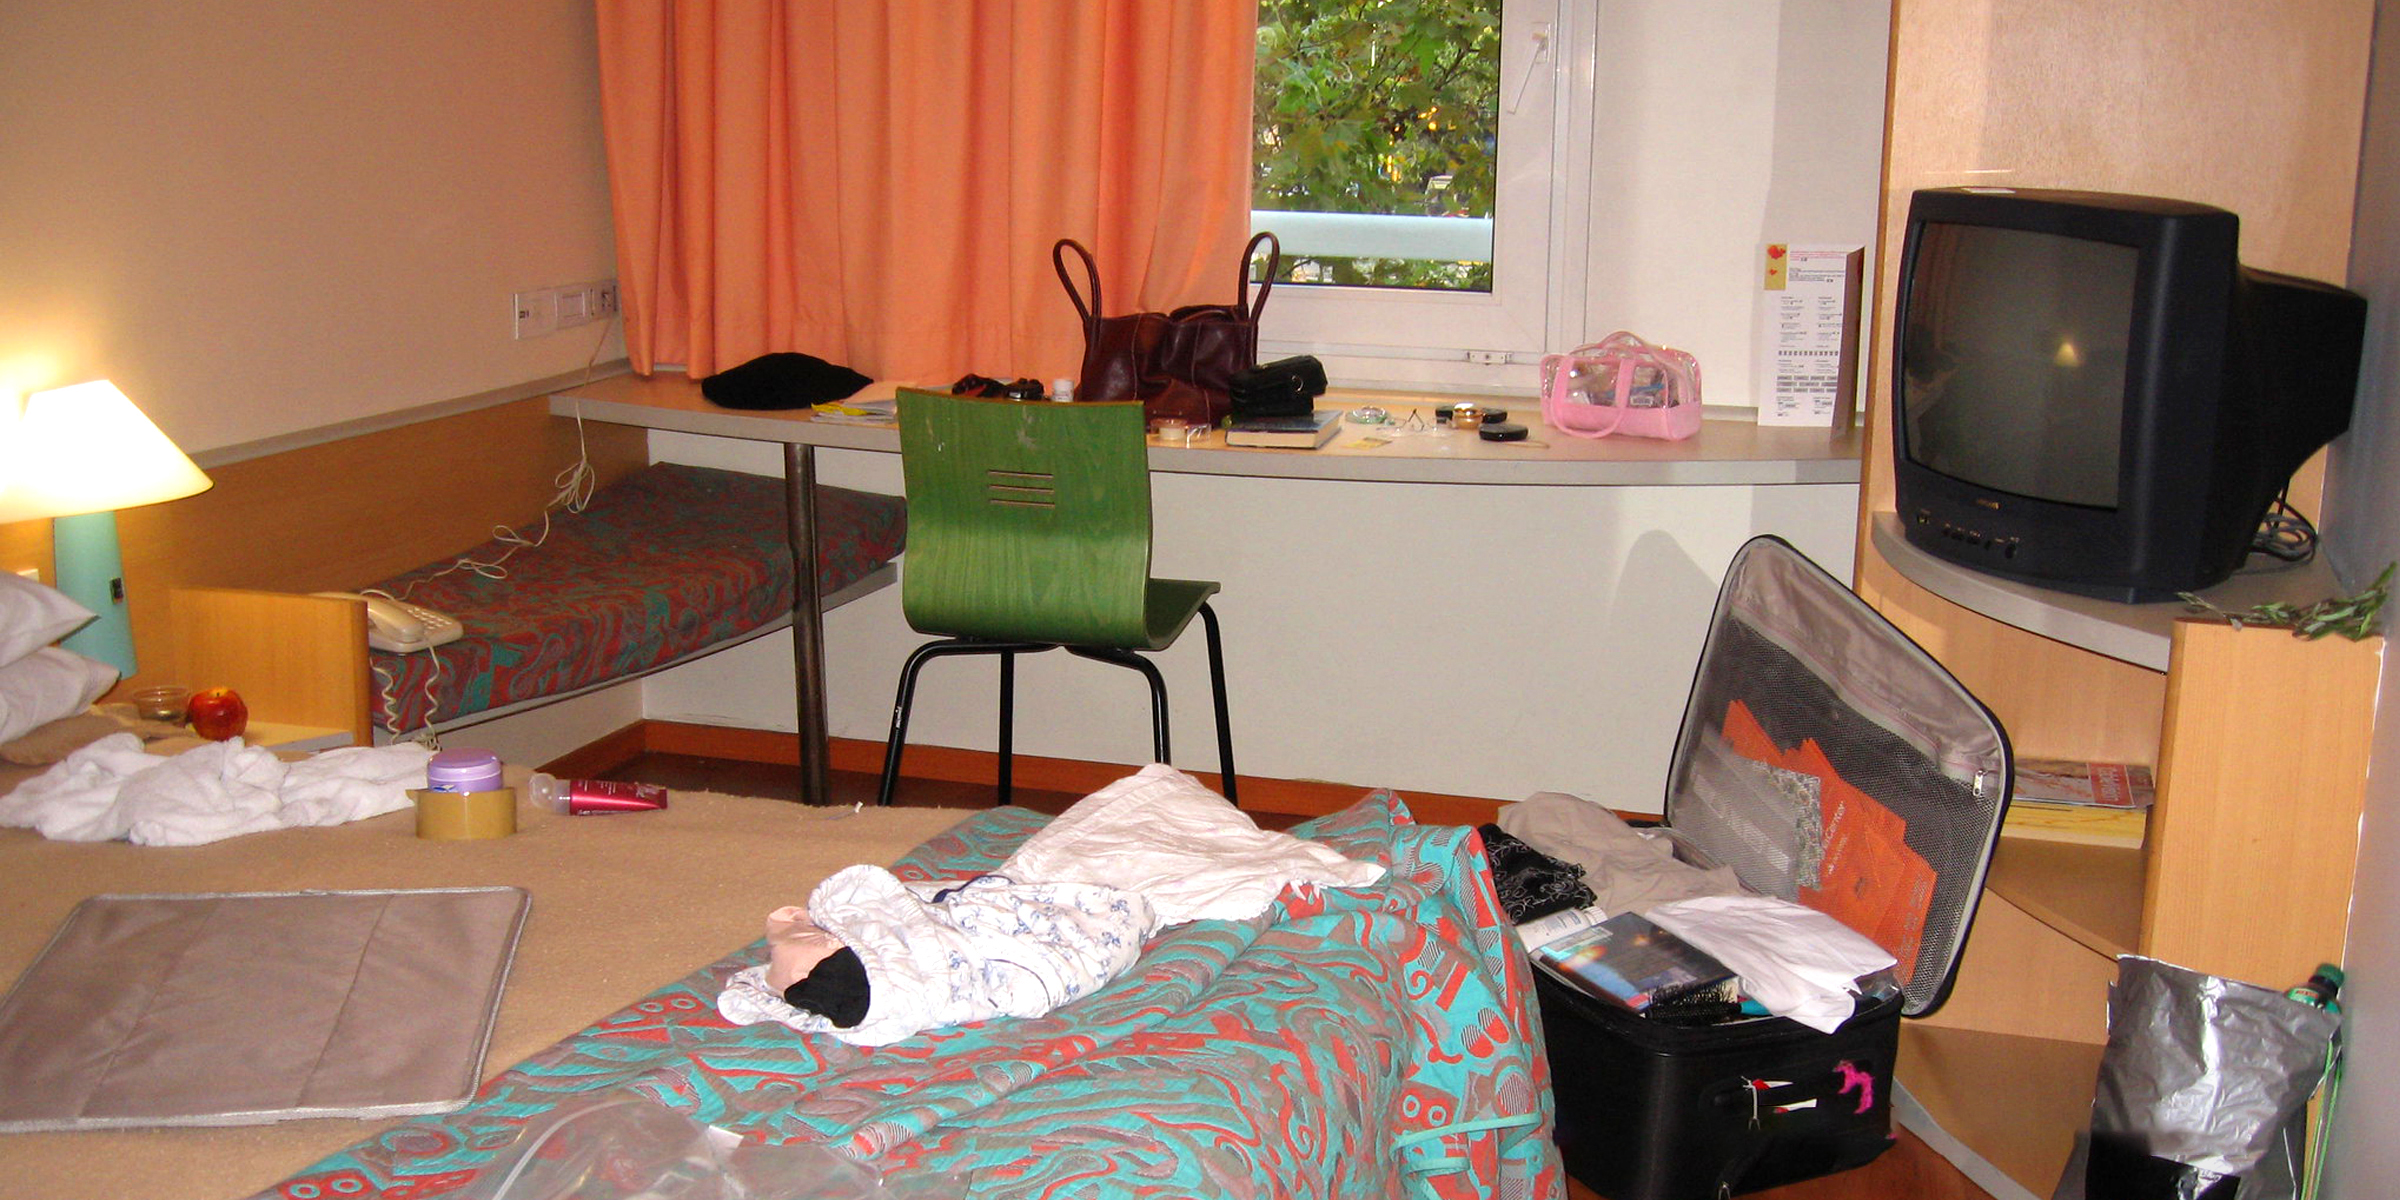 Une chambre d'hôtel en désordre | Source : Flickr